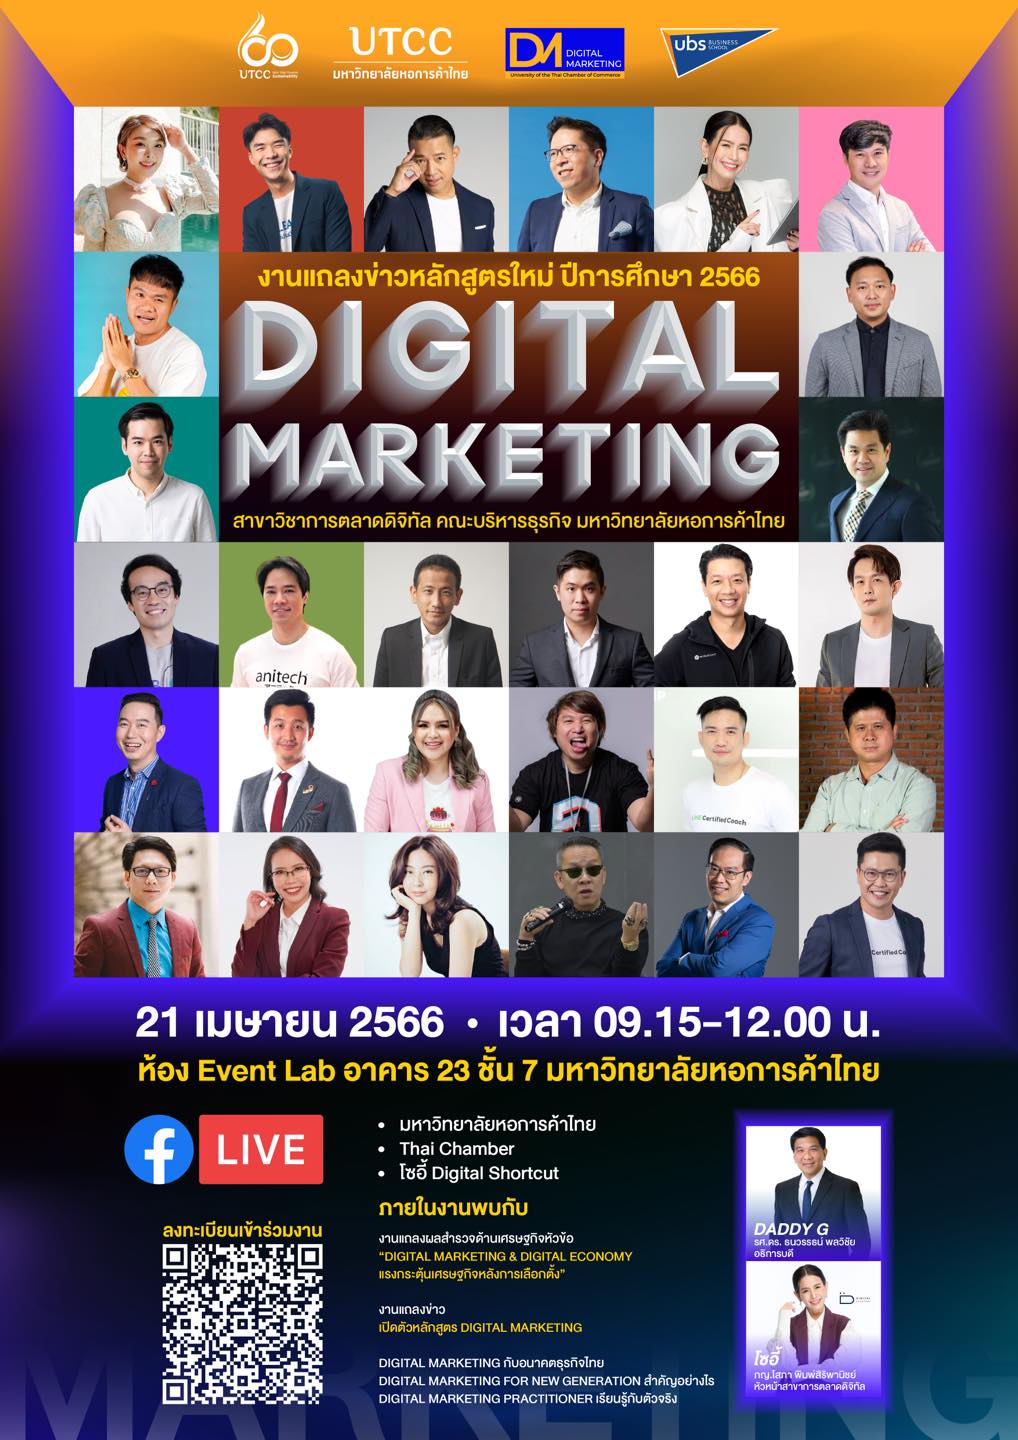 คณะบริหารธุรกิจ ม.หอการค้าไทย เปิดตัว สาขาใหม่ Digital Marketing